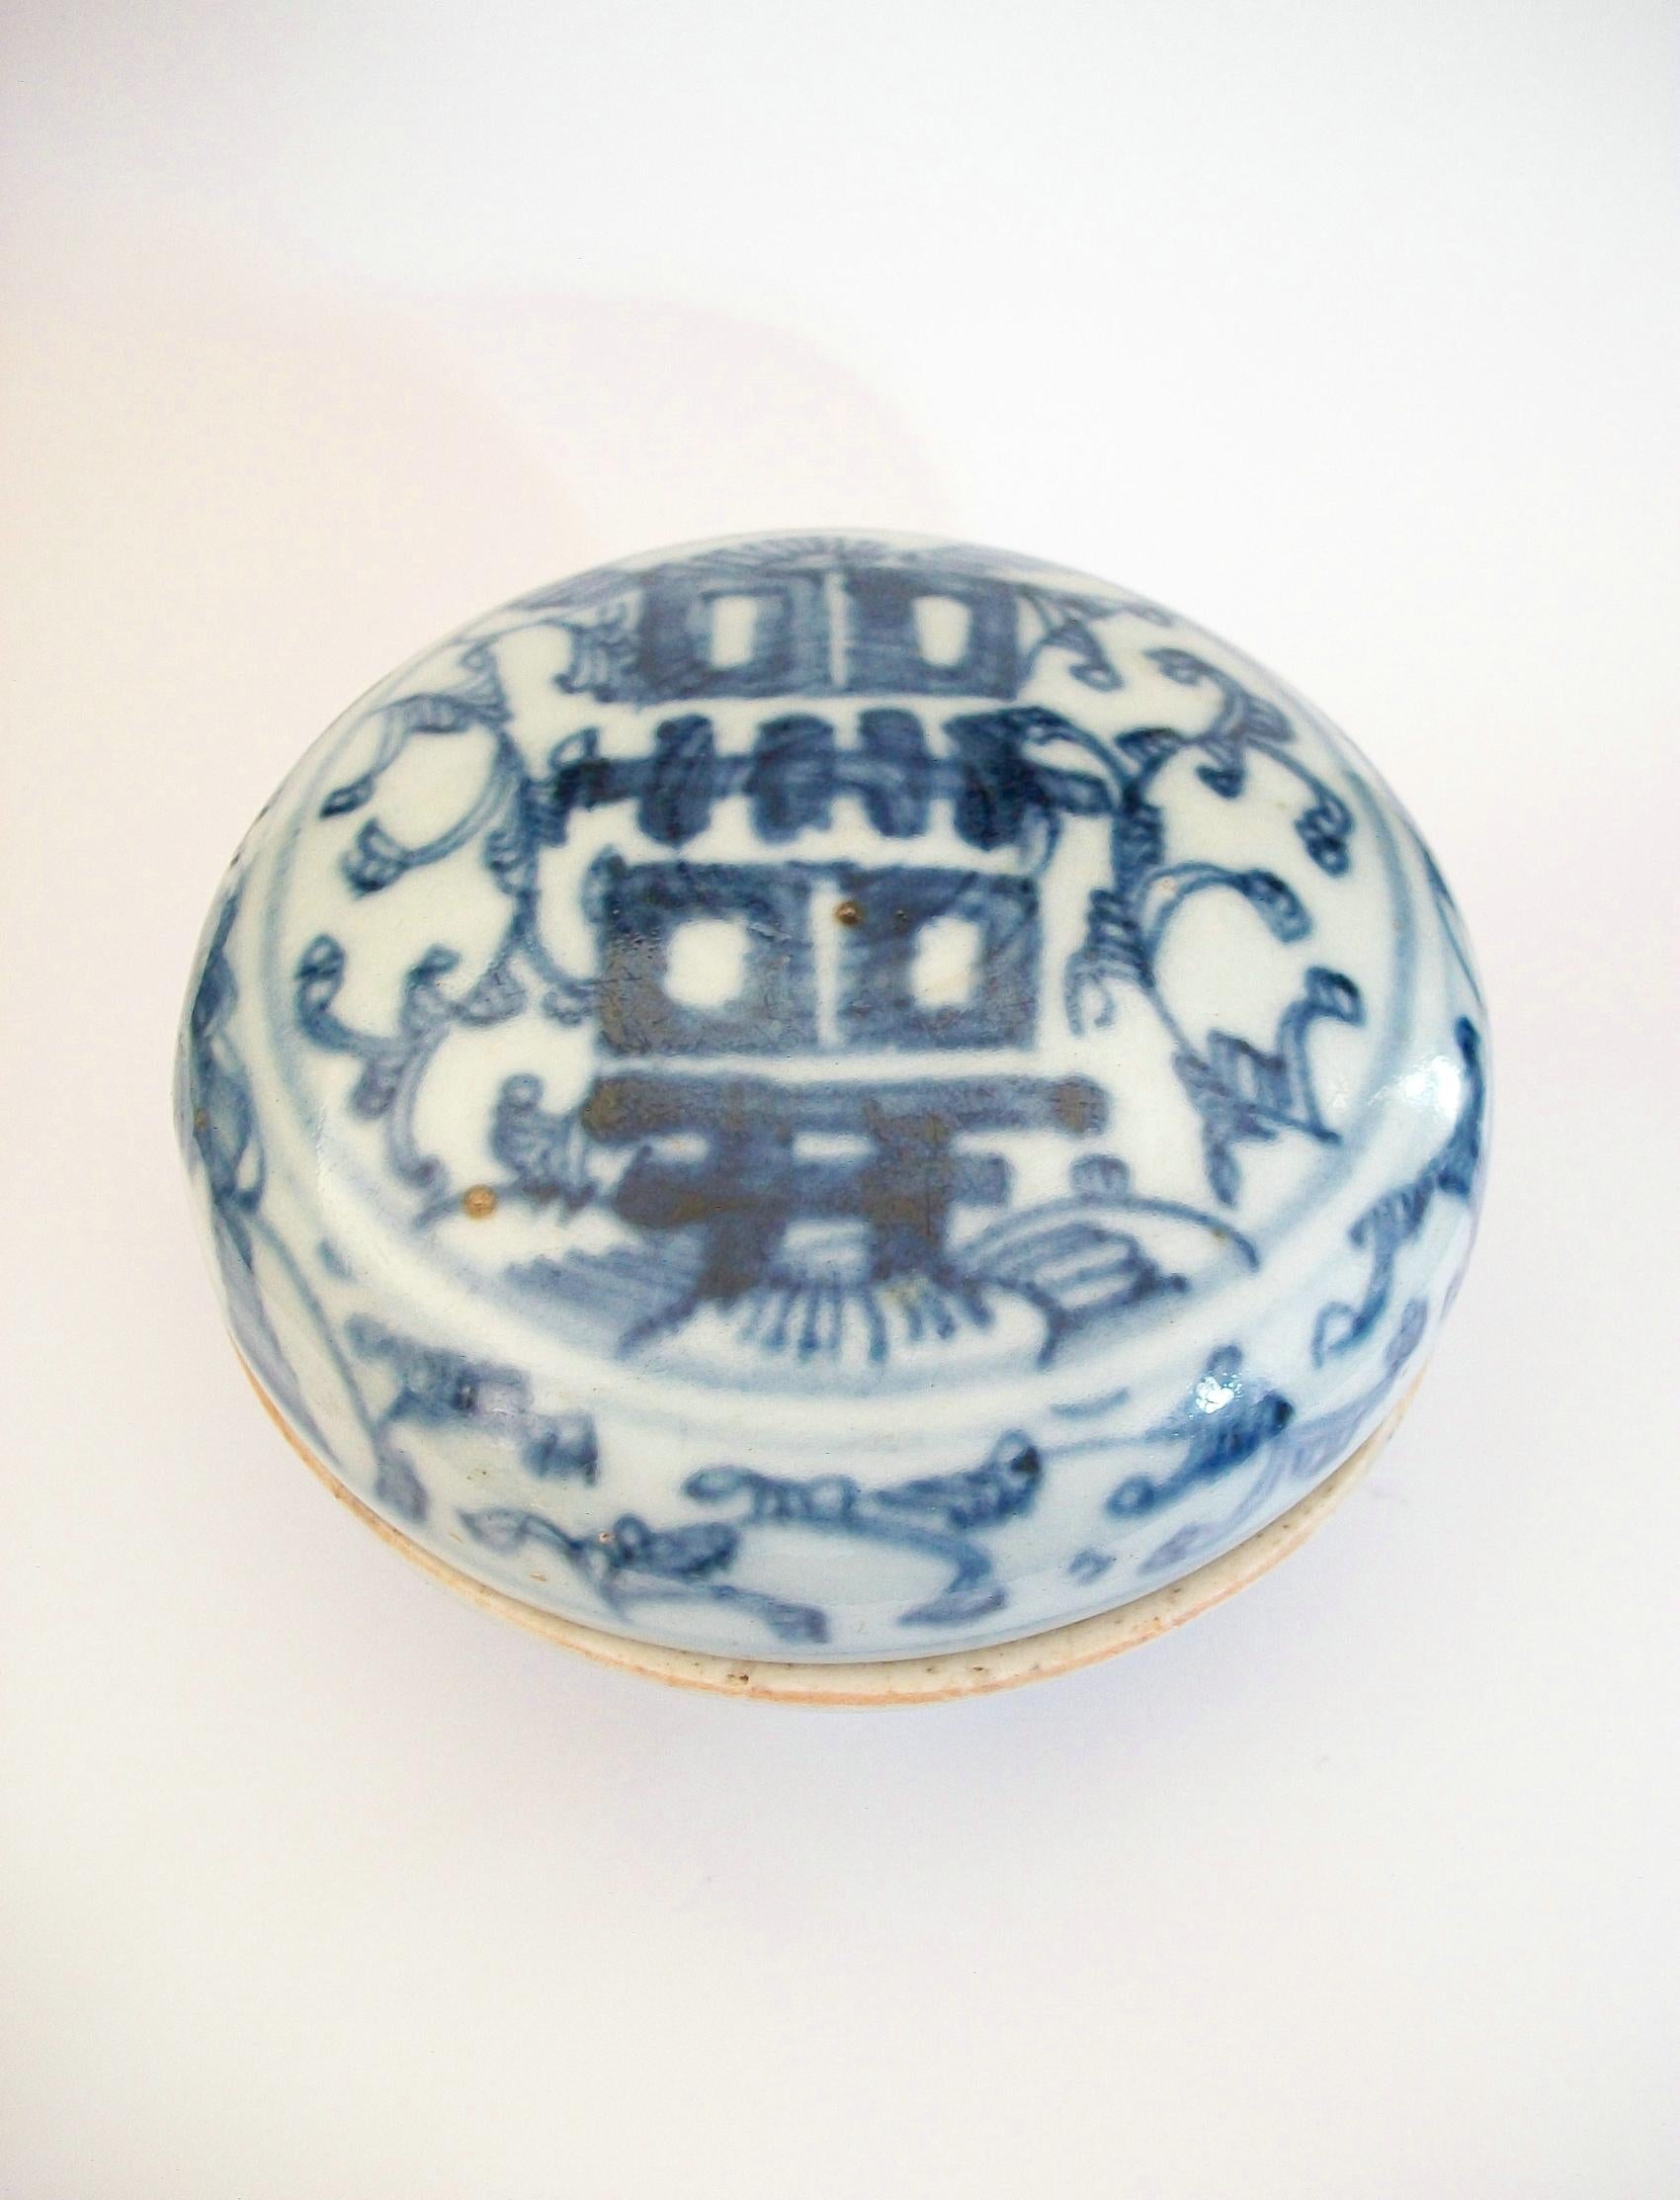 Boîte ancienne en porcelaine bleu et blanc de la dynastie Qing avec couvercle - peinte à la main avec le symbole du double bonheur sur le dessus et des vignes sinueuses sur les côtés - non signée - Chine - fin du 19e siècle.

Bon état d'ancienneté